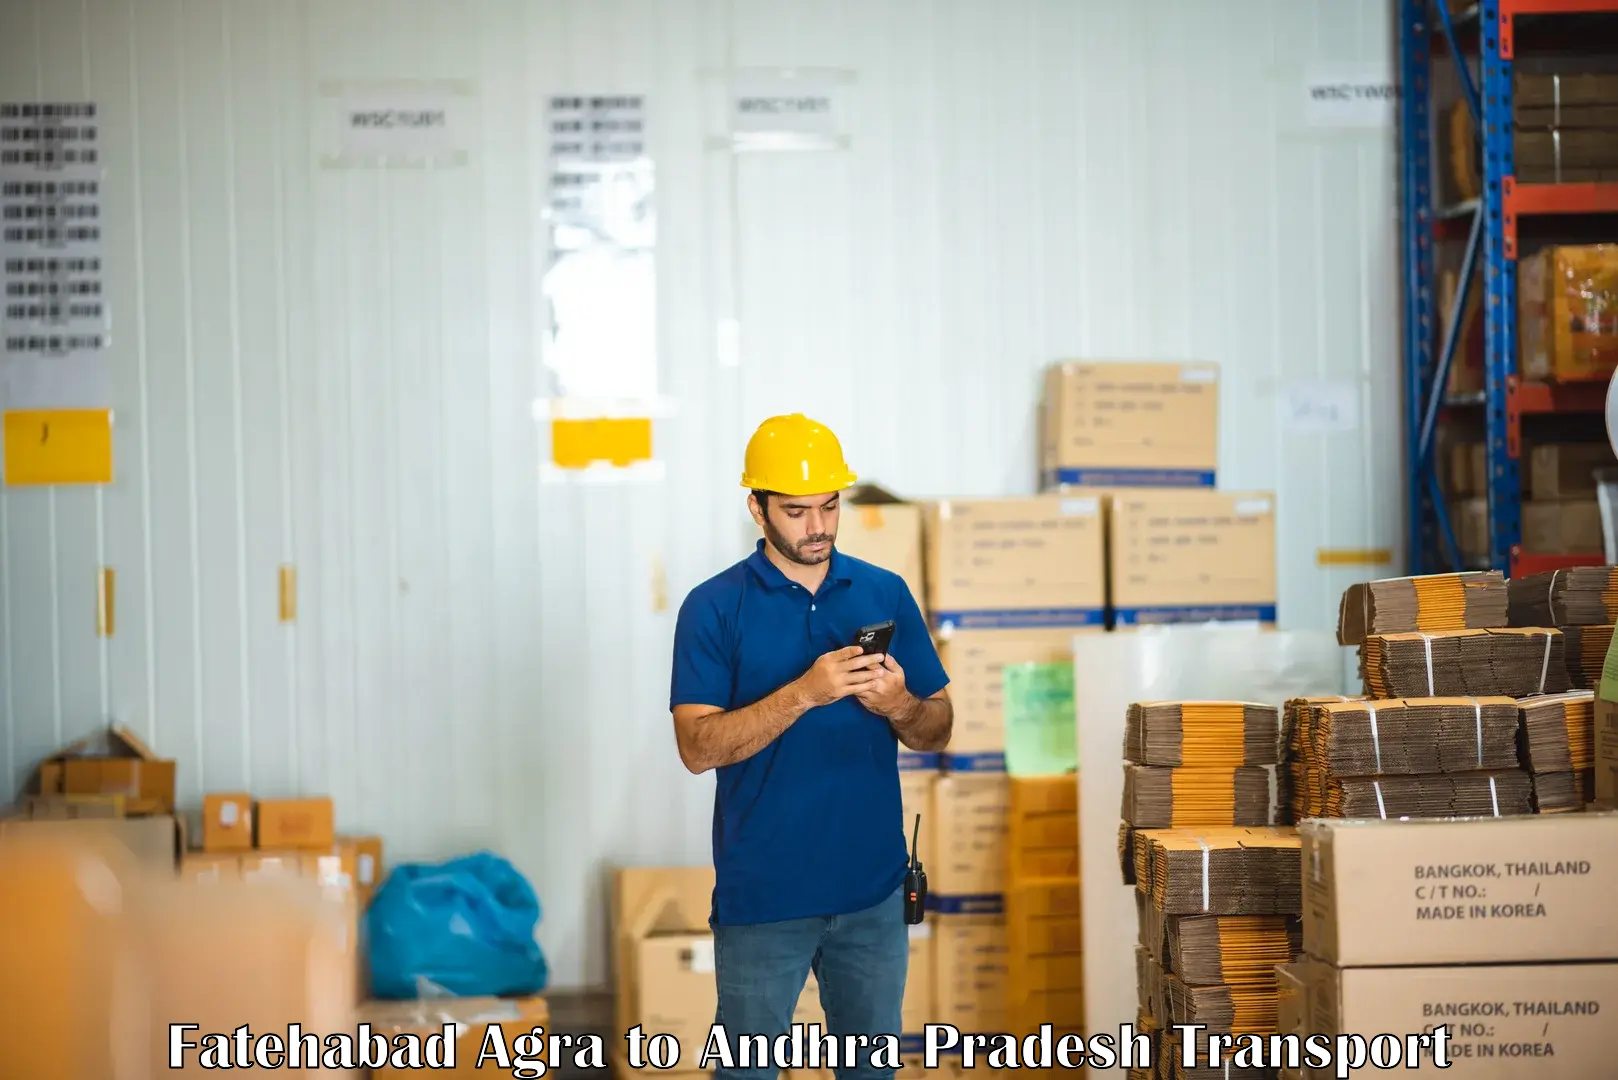 Container transport service Fatehabad Agra to Penugonda